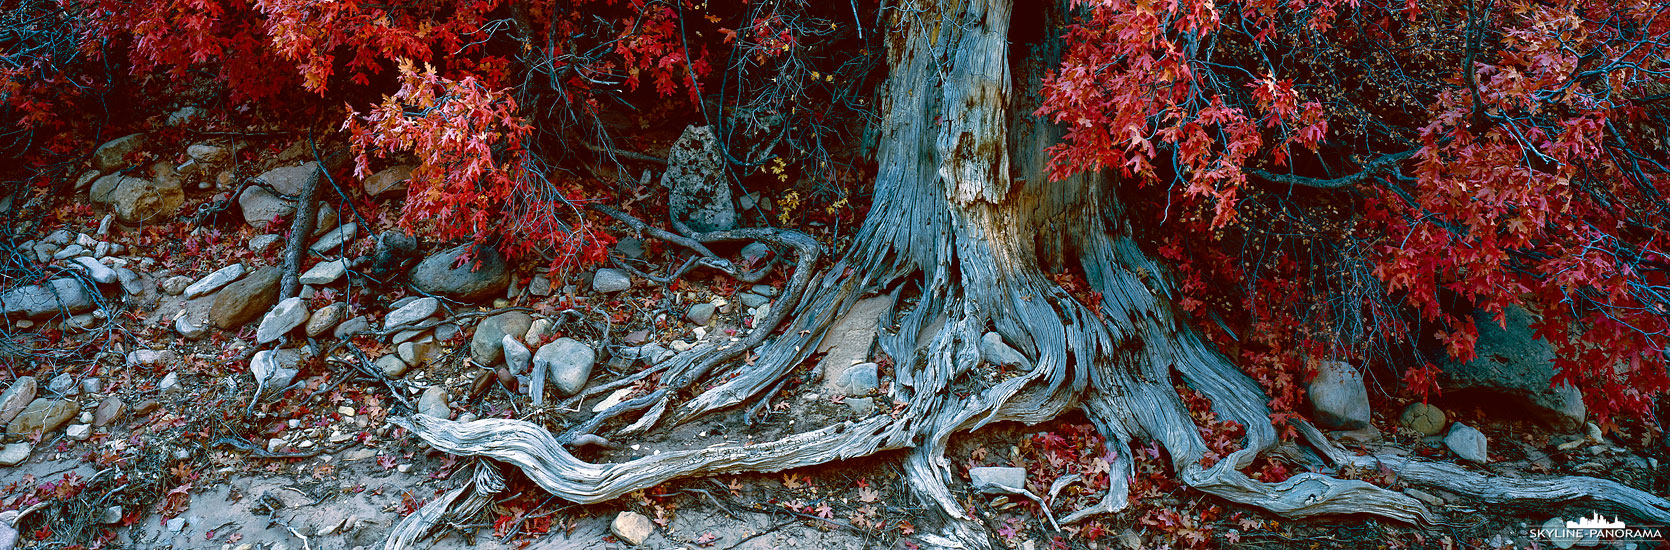 Ahorn in roter Herbstfärbung (p_01193)